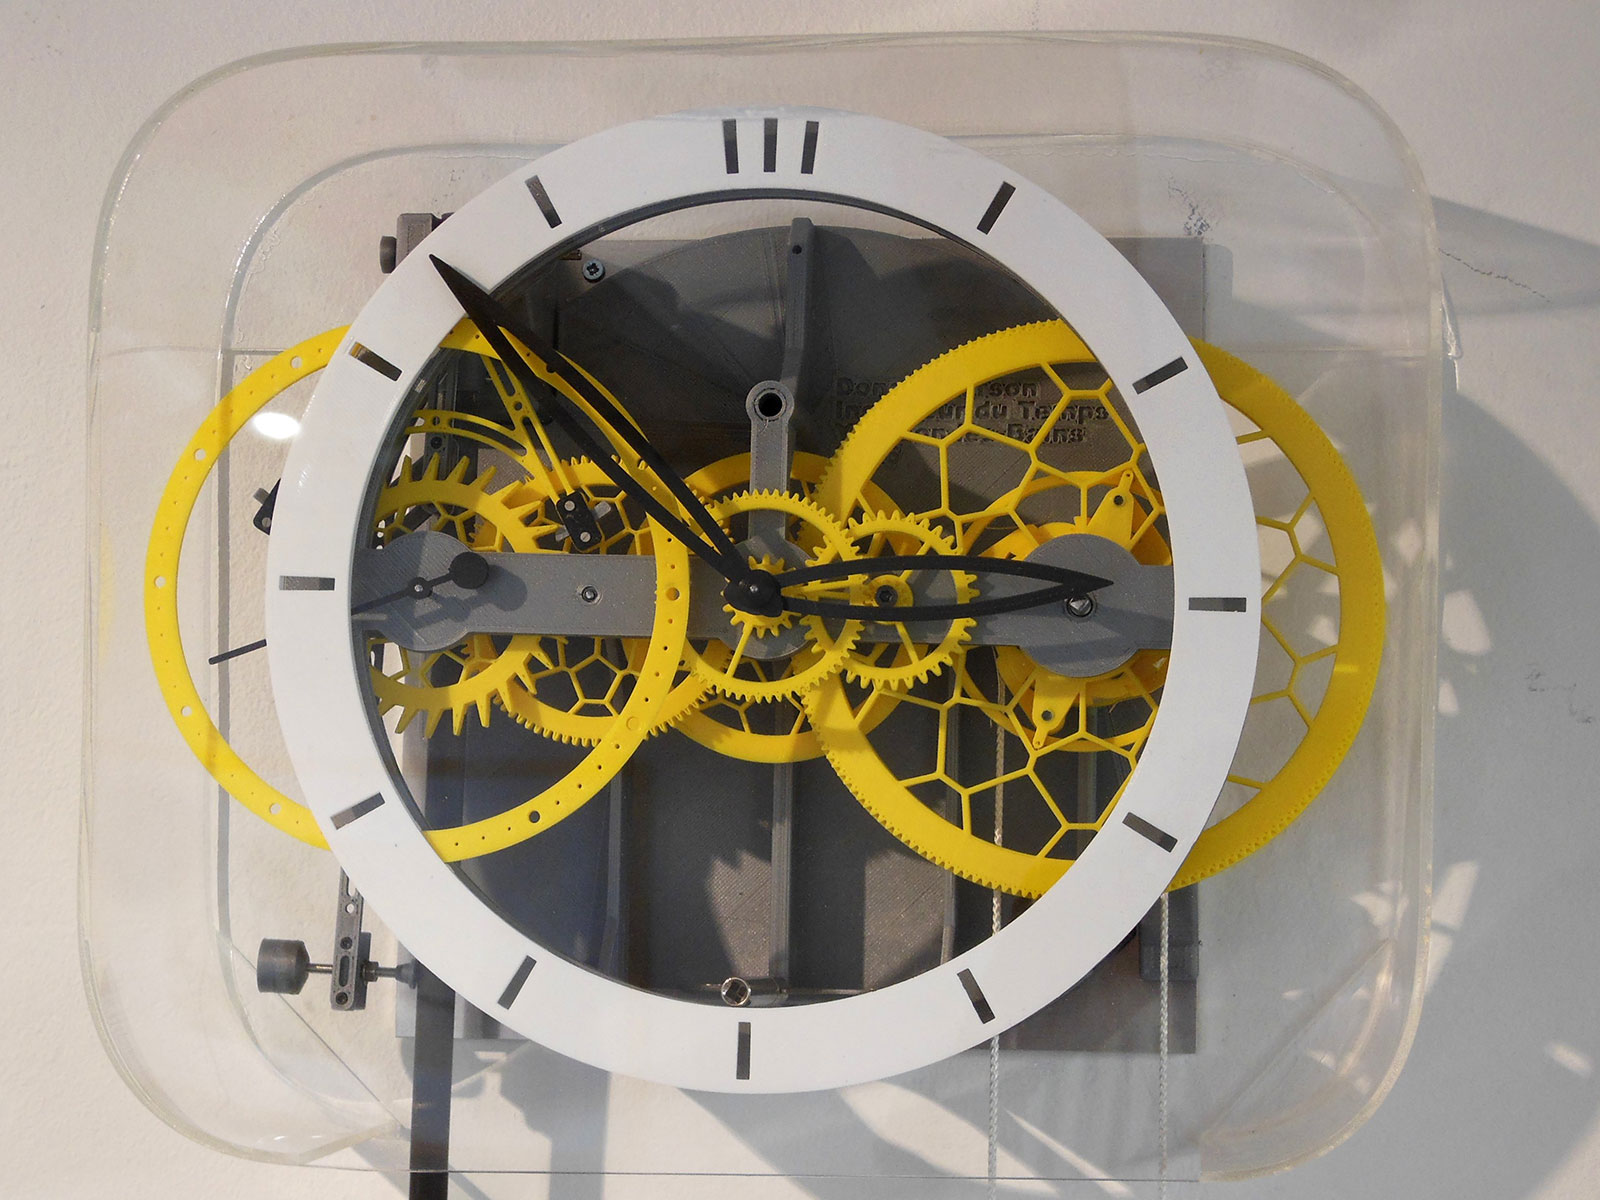 Ingénieur du Temps 3D printed pendulum clock 7